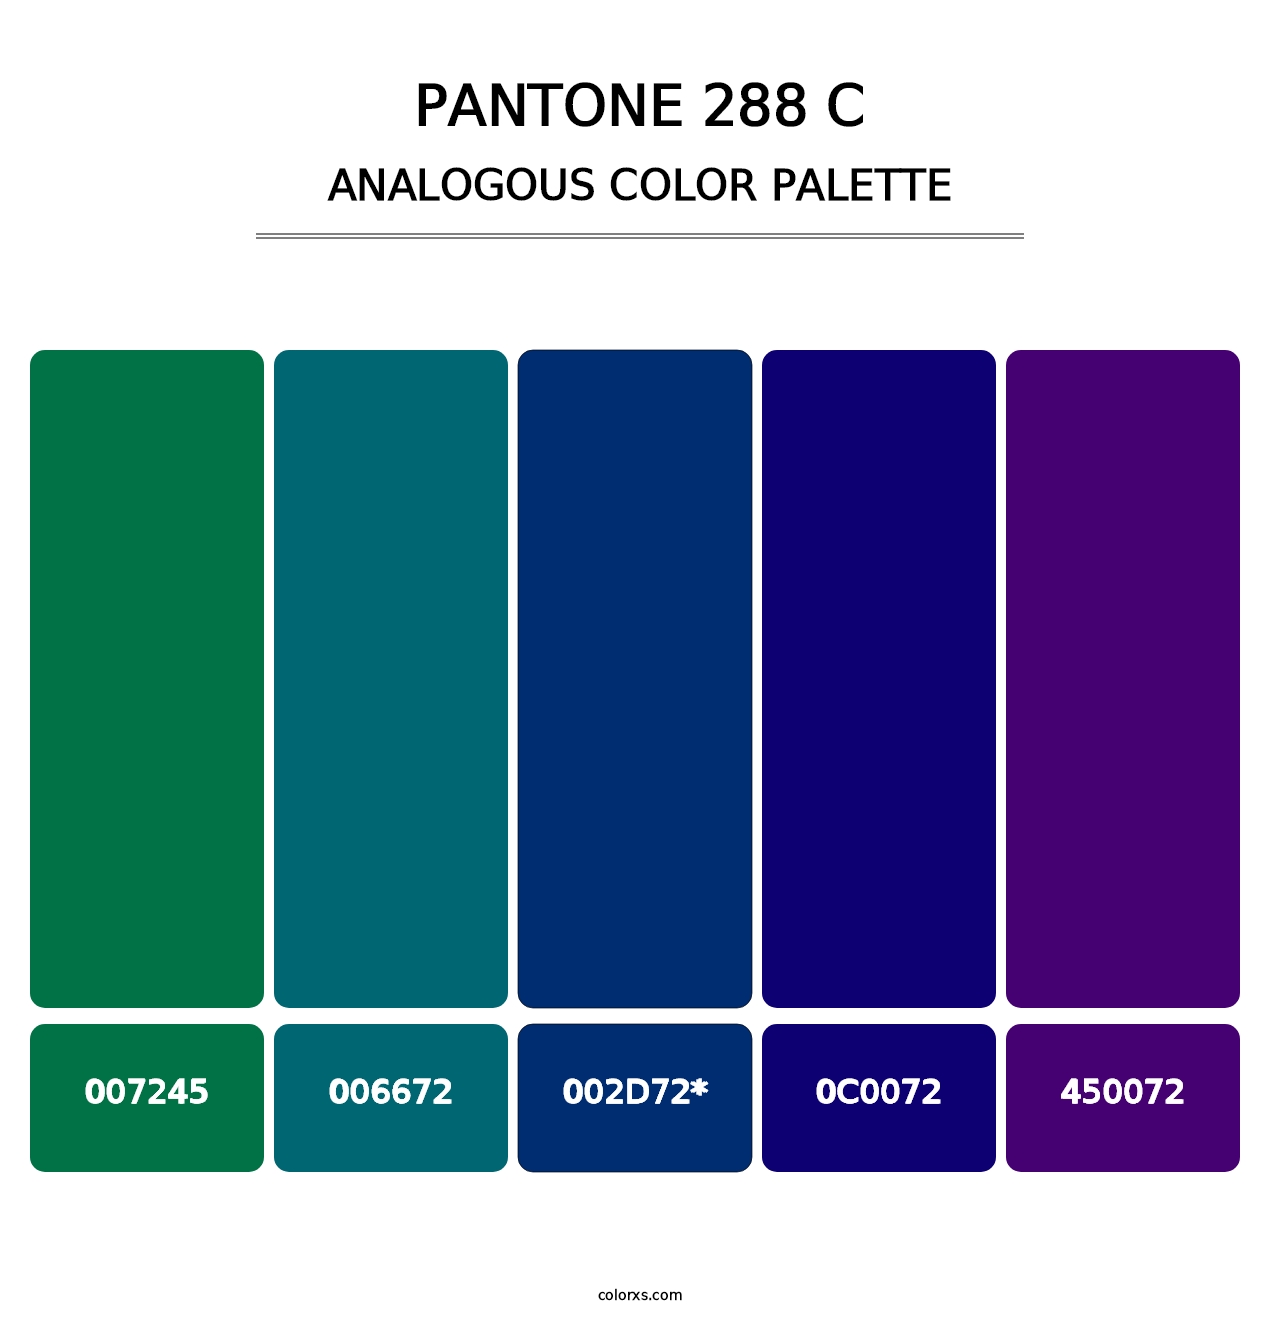 PANTONE 288 C - Analogous Color Palette